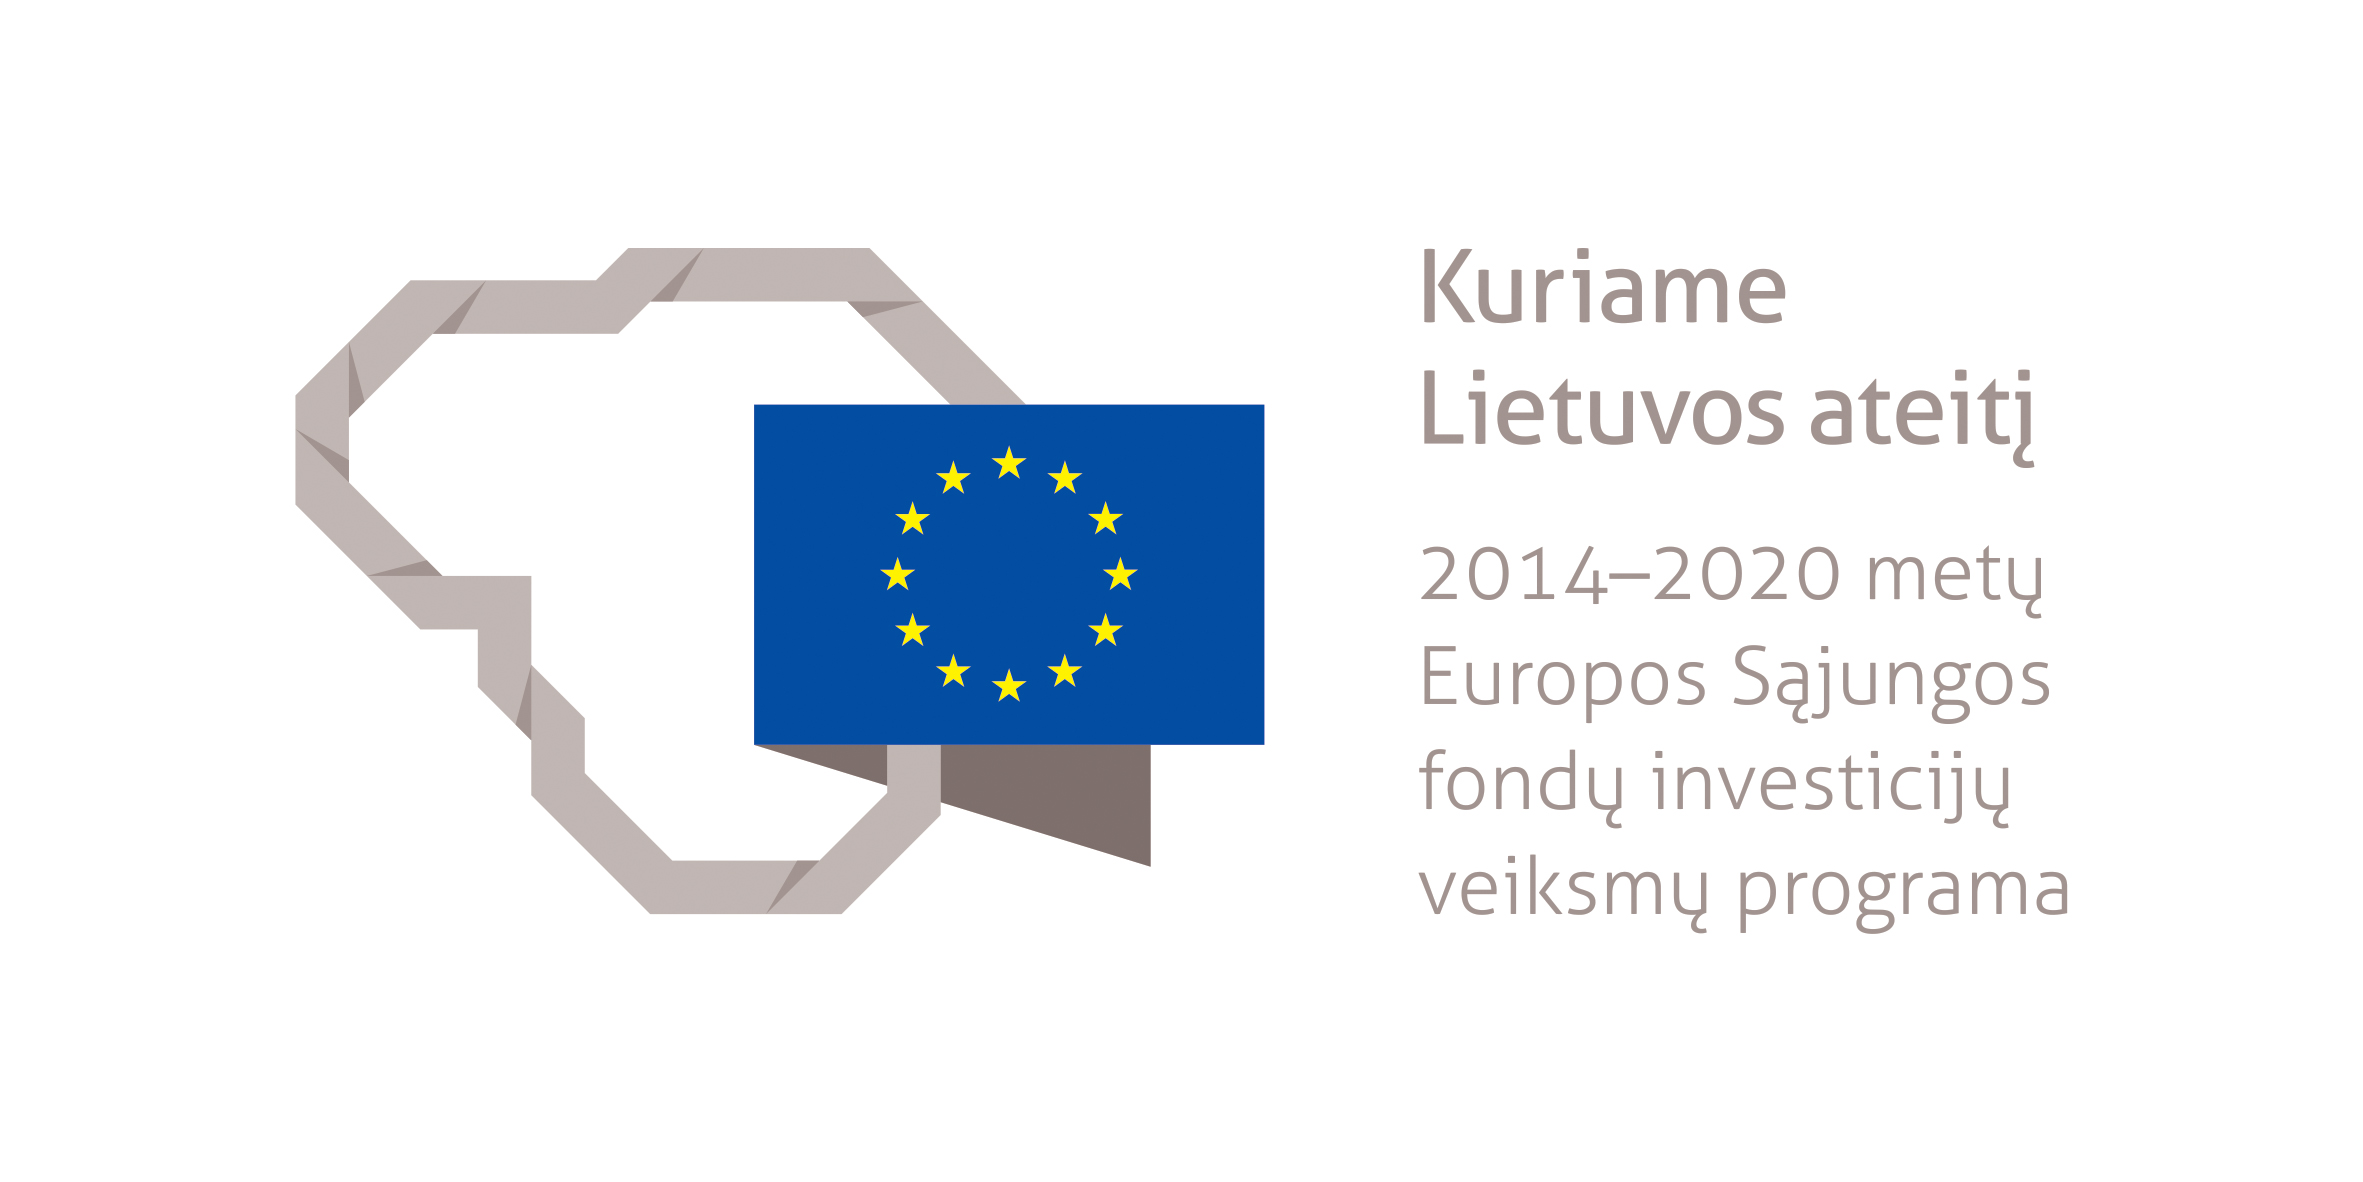 Projektas bendrai finansuotas iš Europos socialinio fondo lėšų (projekto nr. 09.3.3-LMT-K-712-25-0116) pagal dotacijos sutartį su Lietuvos mokslo taryba (LMTLT)